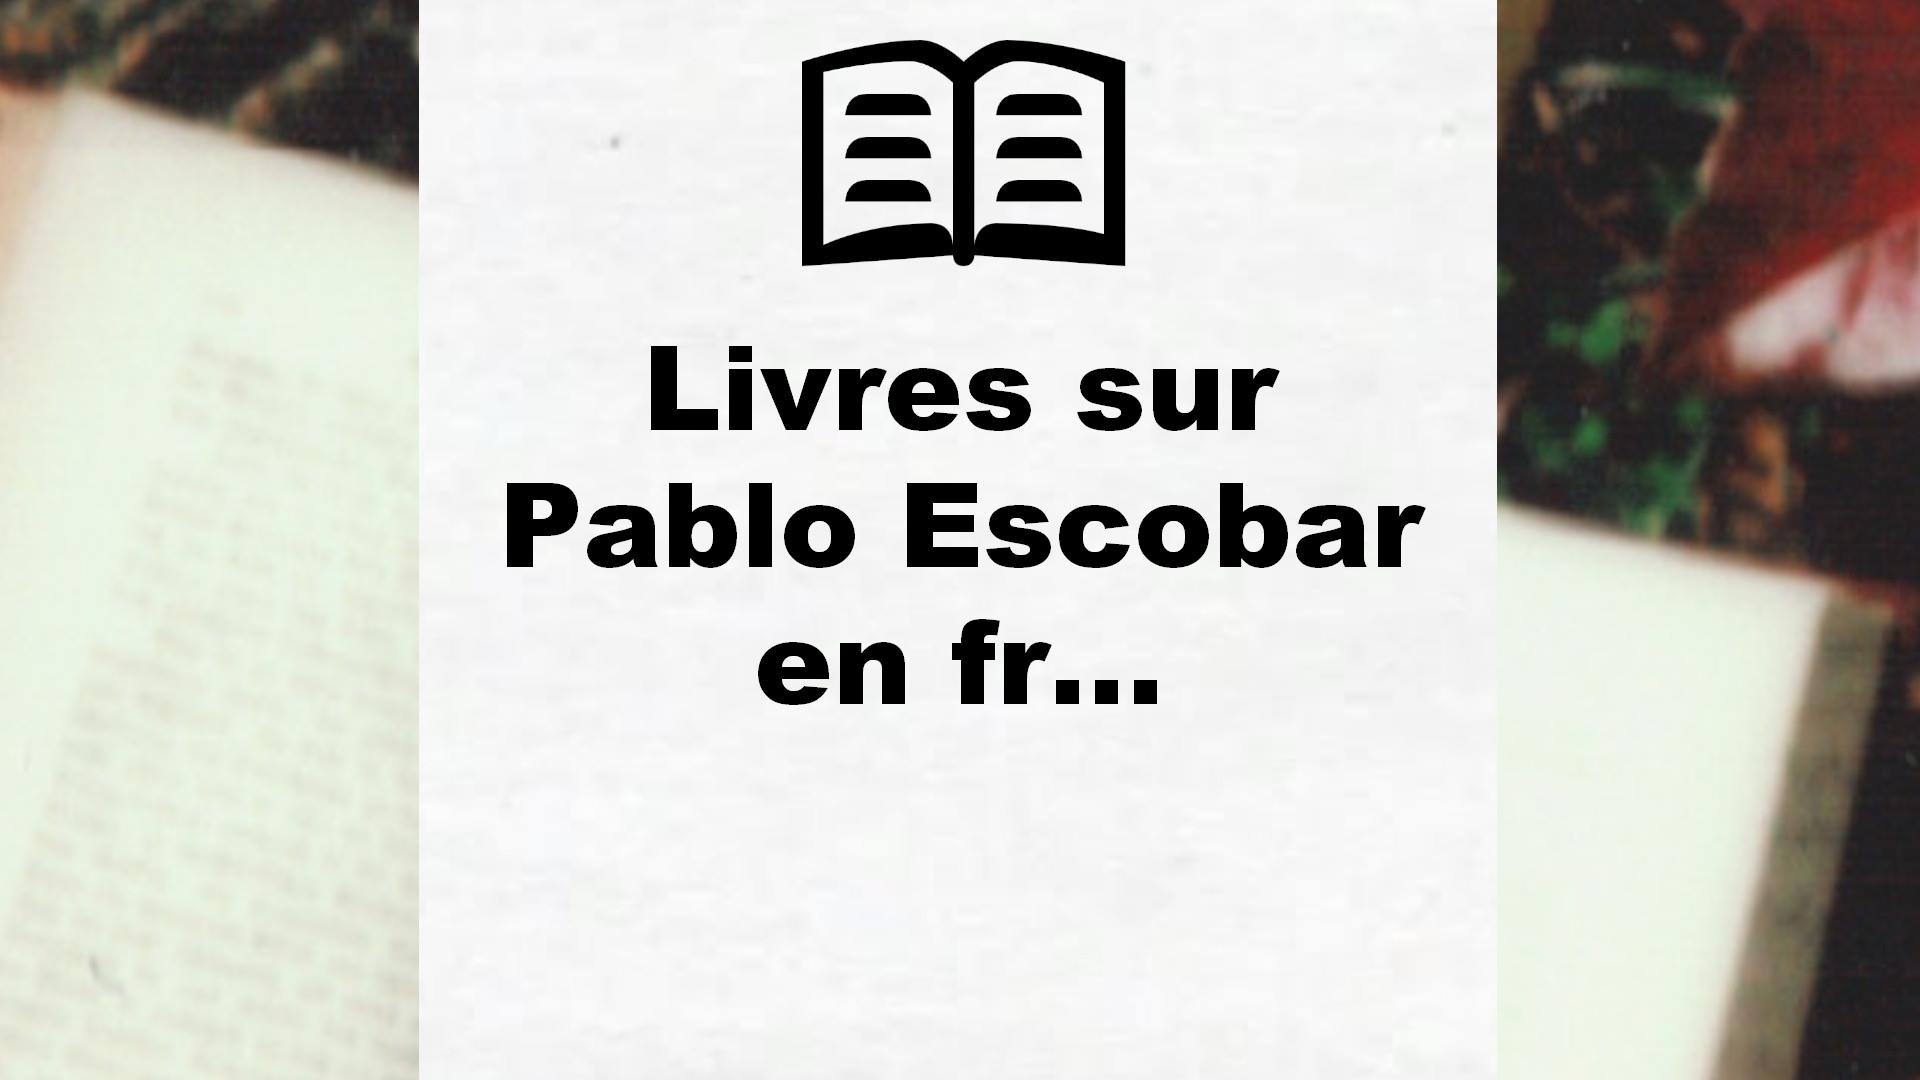 Livres sur Pablo Escobar en français